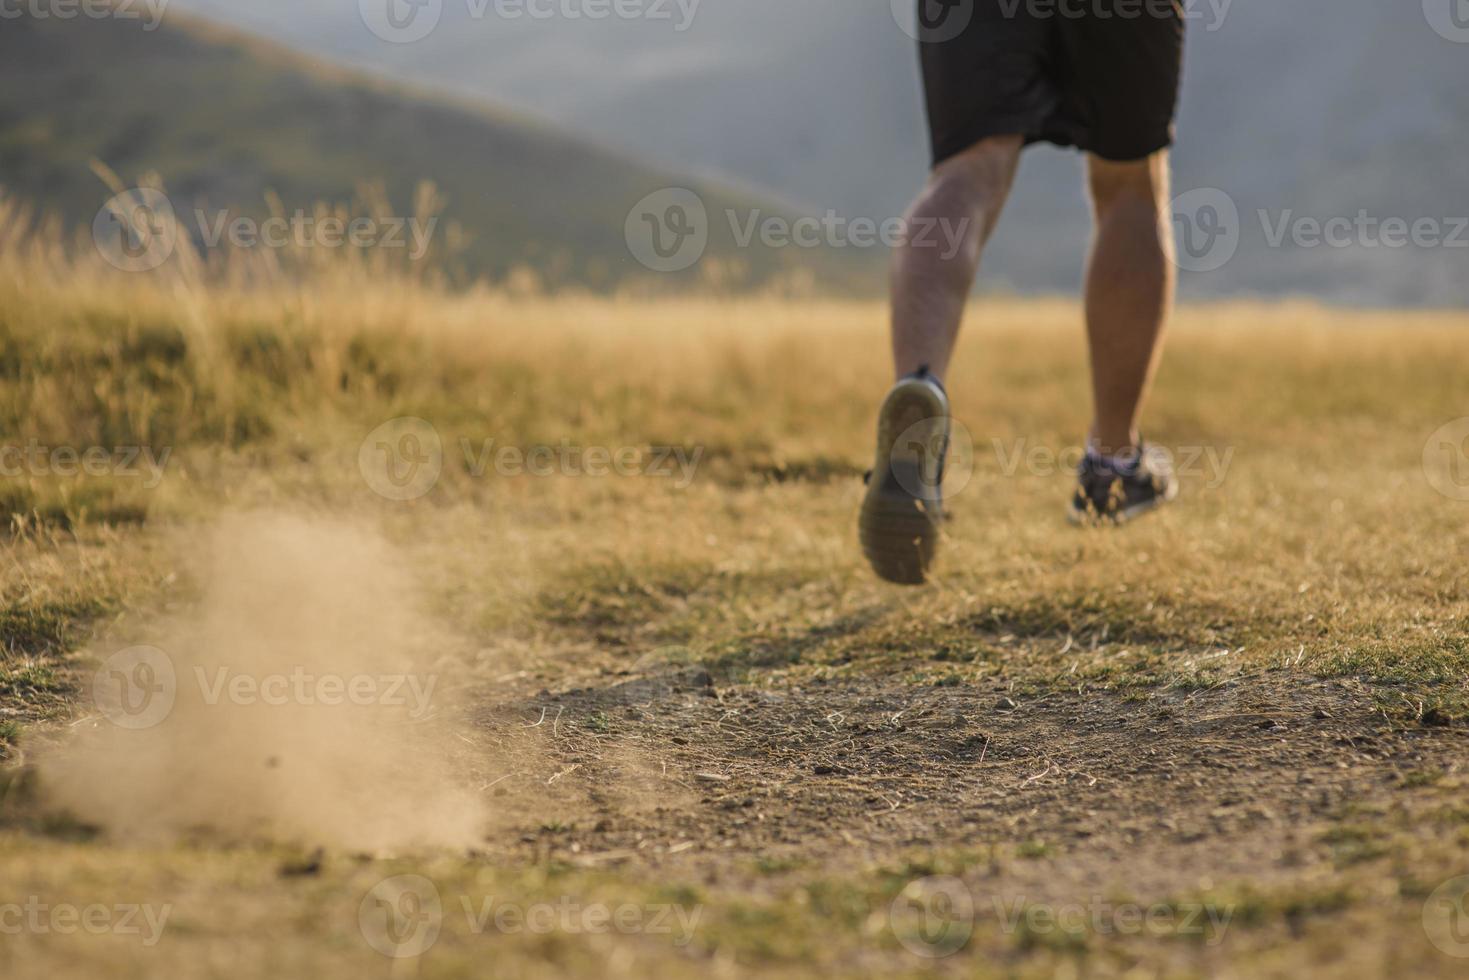 corredor de homem desportivo correndo no planalto da montanha no verão foto